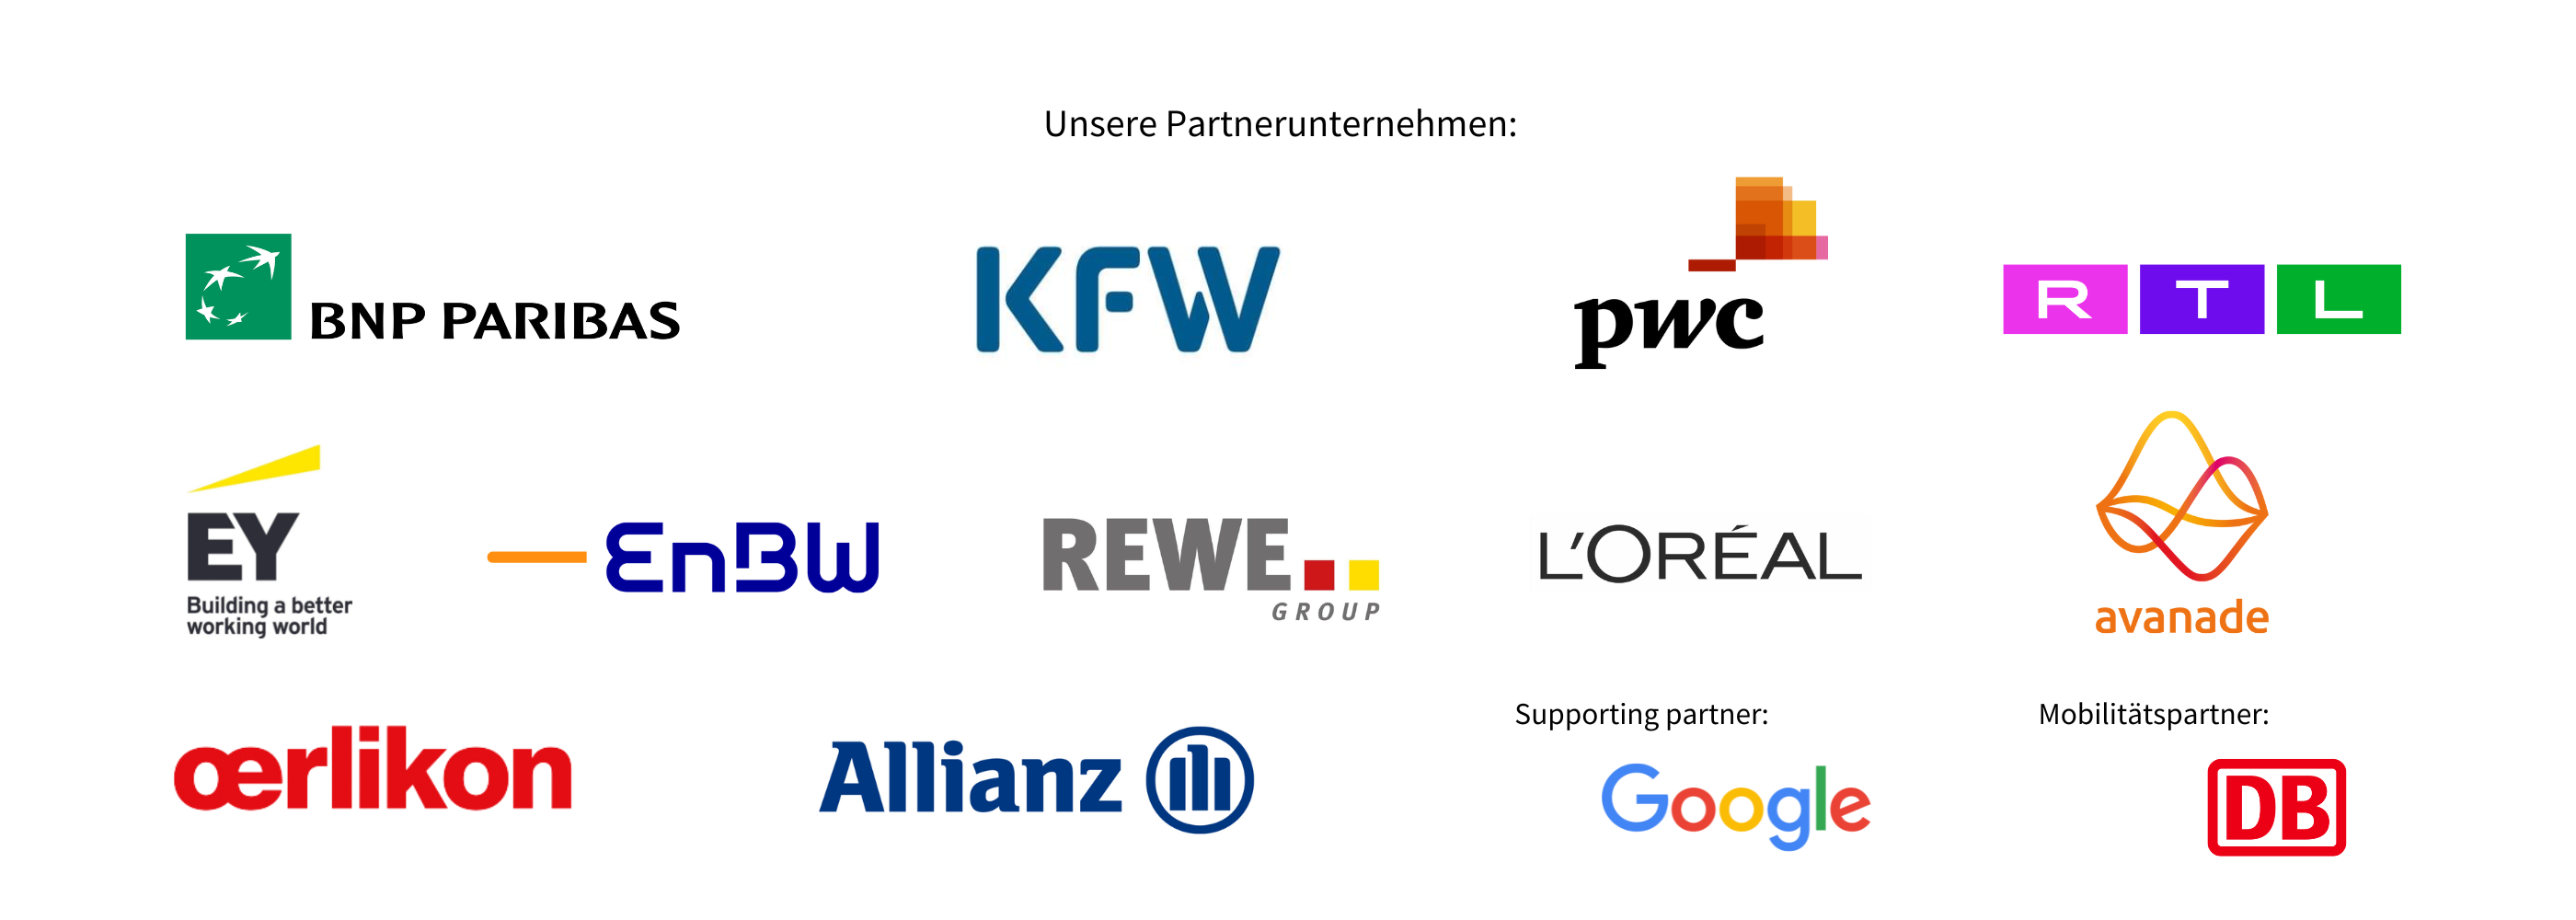 Unsere Partnerunternehmen BNP,KFW,PWC,RTL,Allianz, EY, Loreal,EnBW, Oerlikon, Avanade, Rewe , Supporting Partner Google, Mobilitätspartner Deutsche Bahn